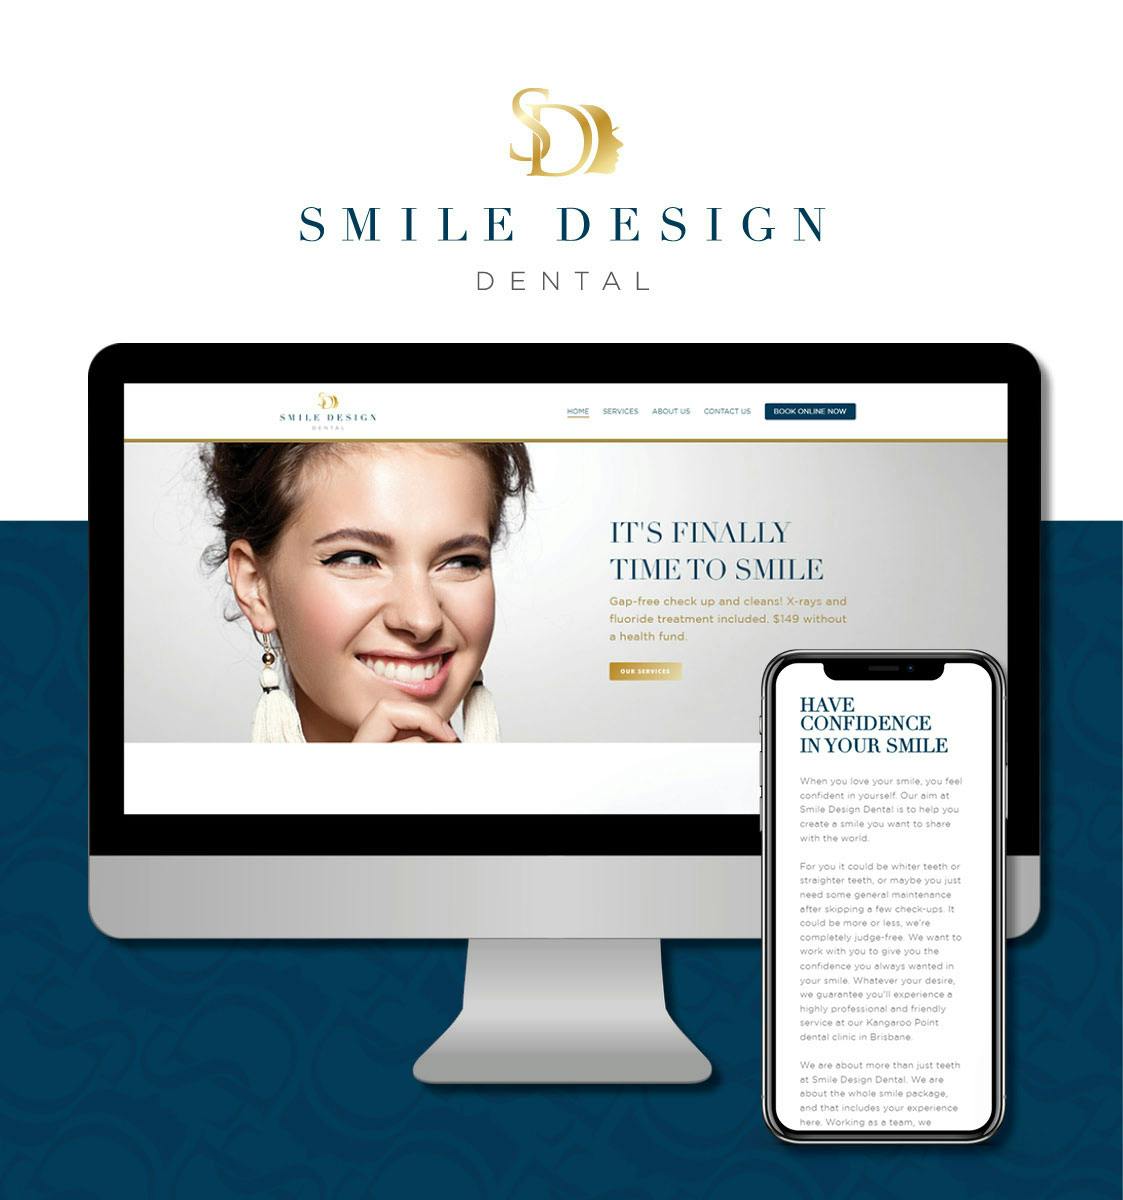 Smile Design Dental case study